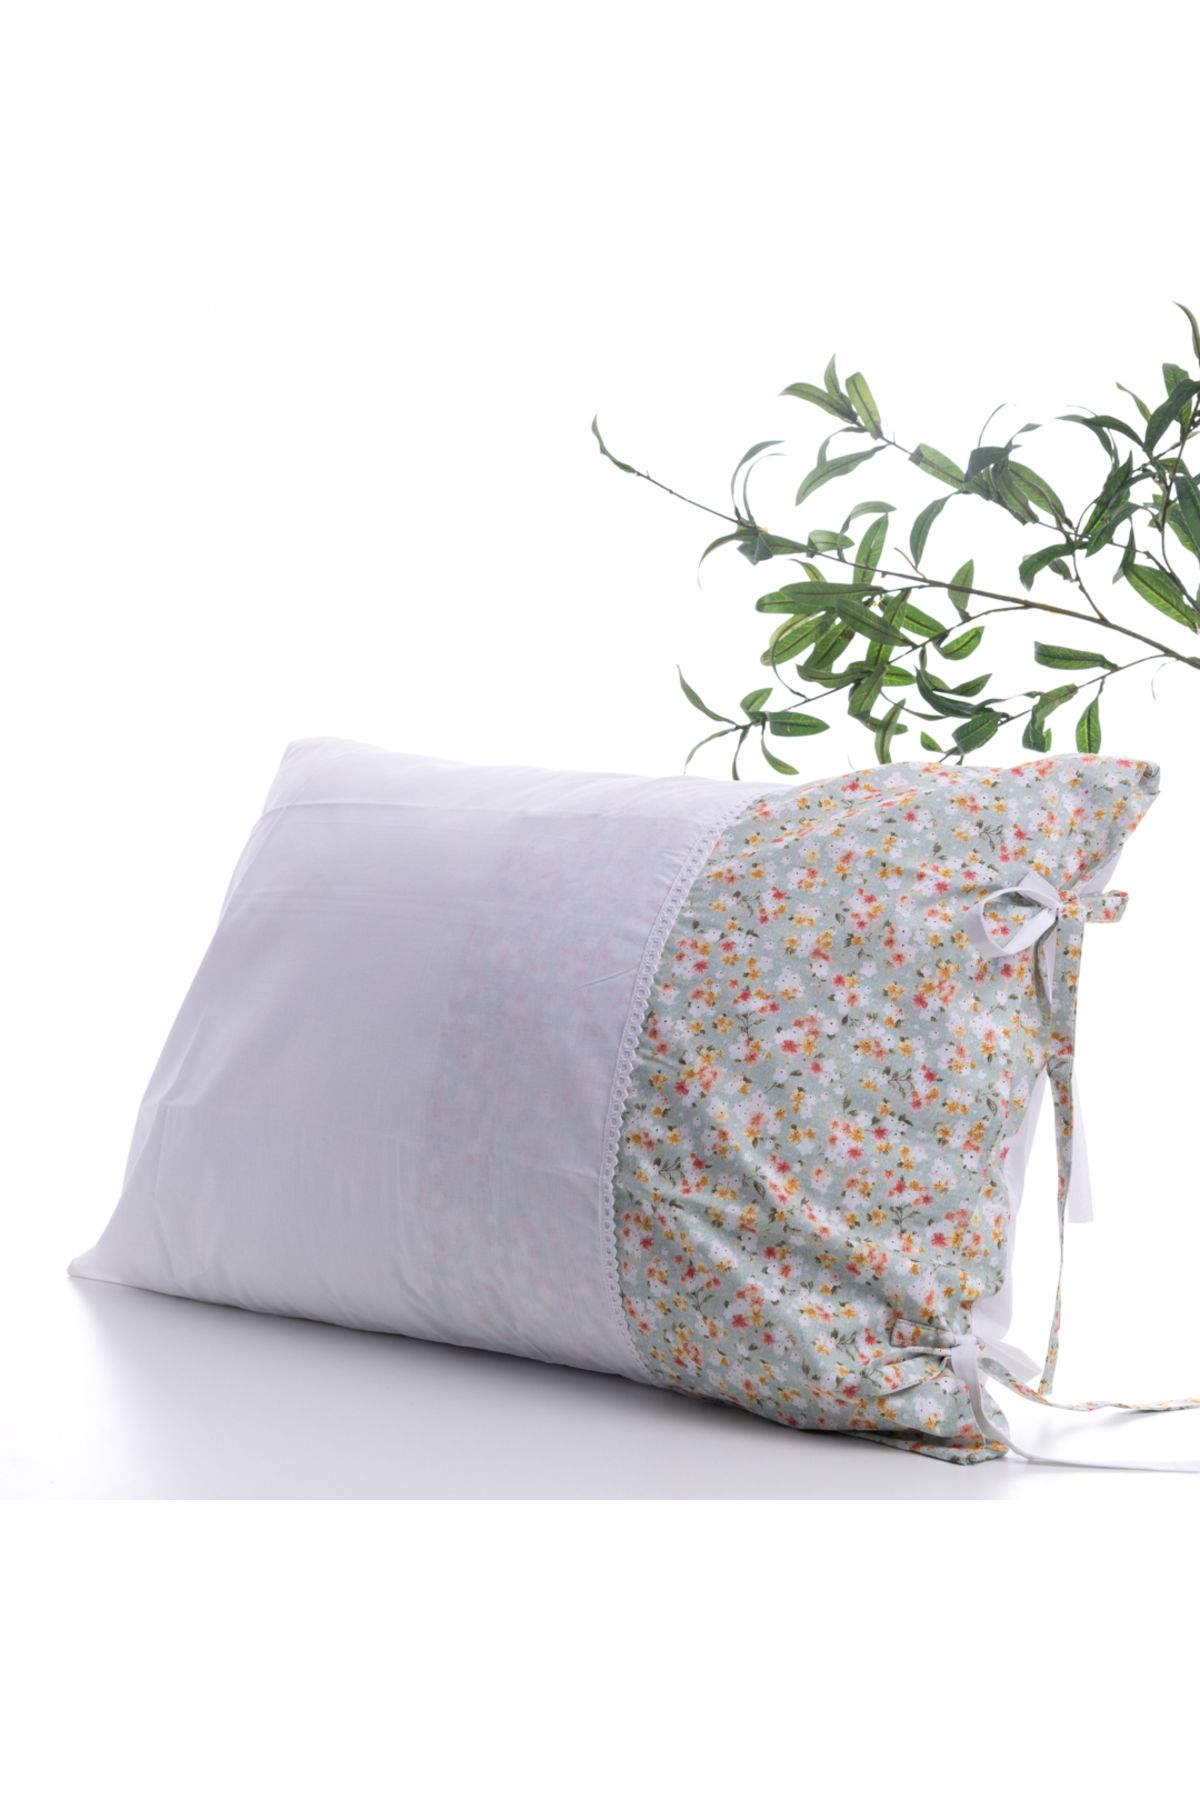 Bimotif Çiçek desenli yastık kılıfı, 50x70 cm, Açık Yeşil